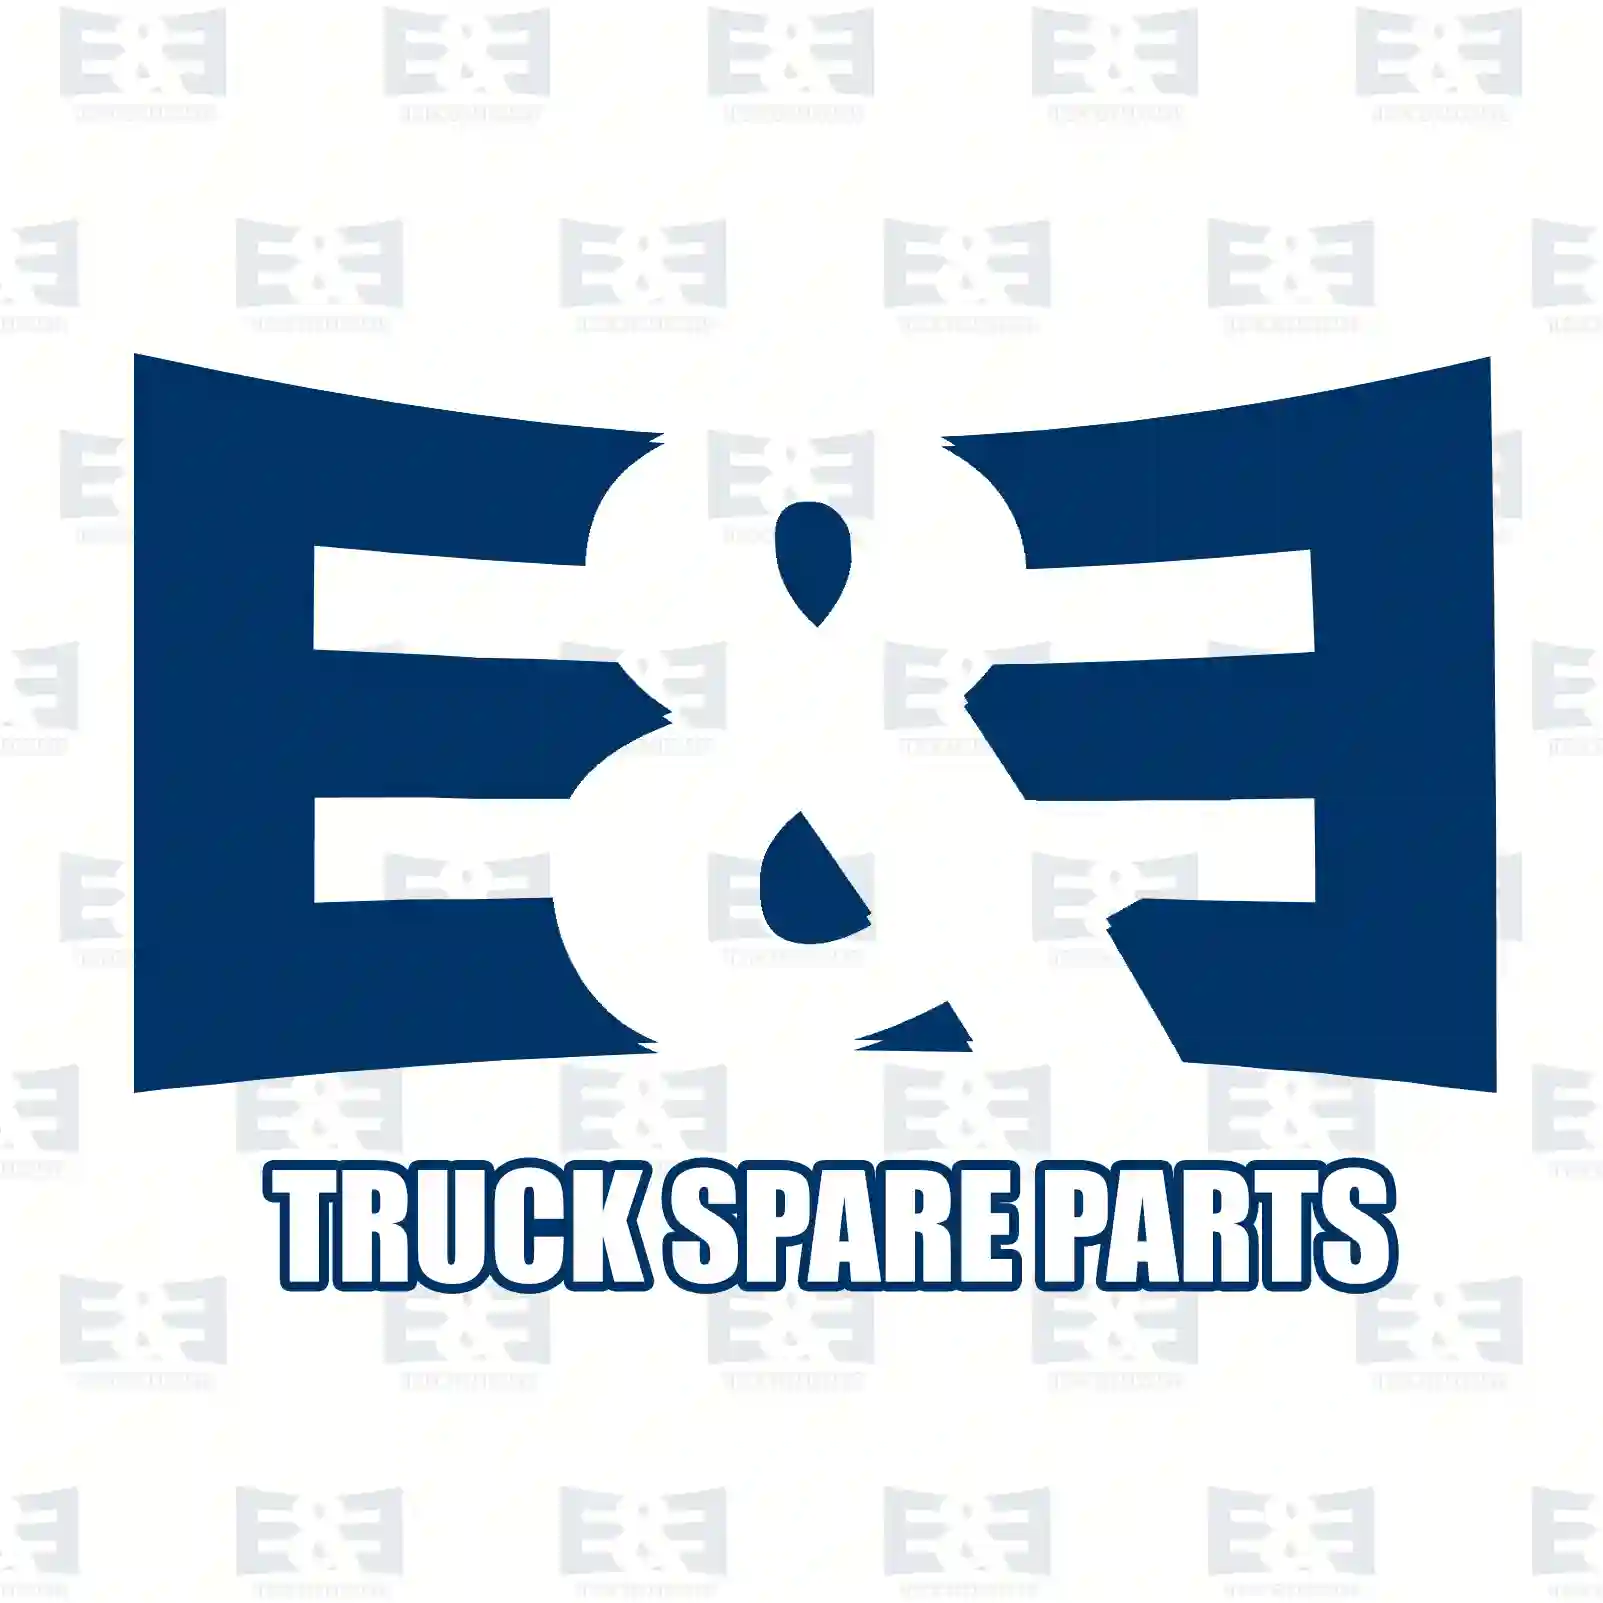  Connecting rod, compressor || E&E Truck Spare Parts | Truck Spare Parts, Auotomotive Spare Parts